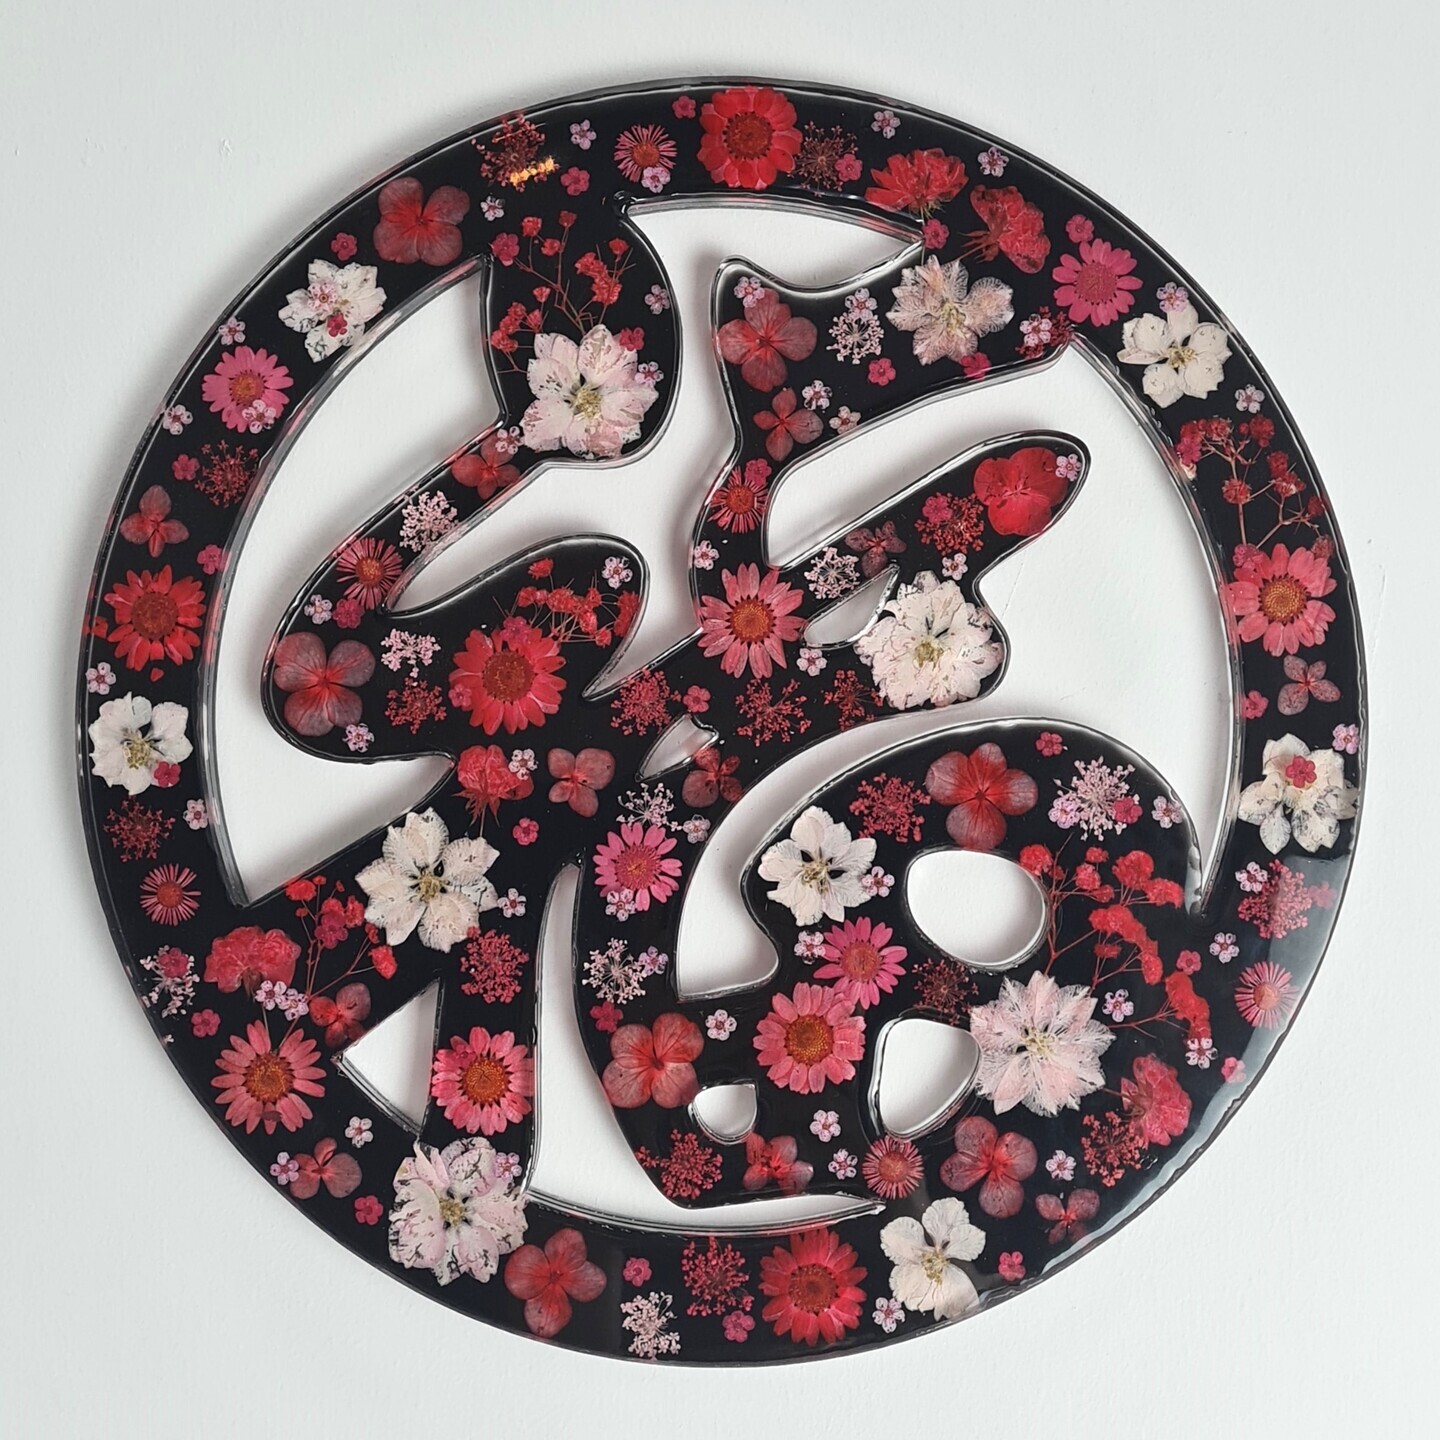 福 Fu Bloom | Handmade resin wall hanging with real flowers | Special needs artisans